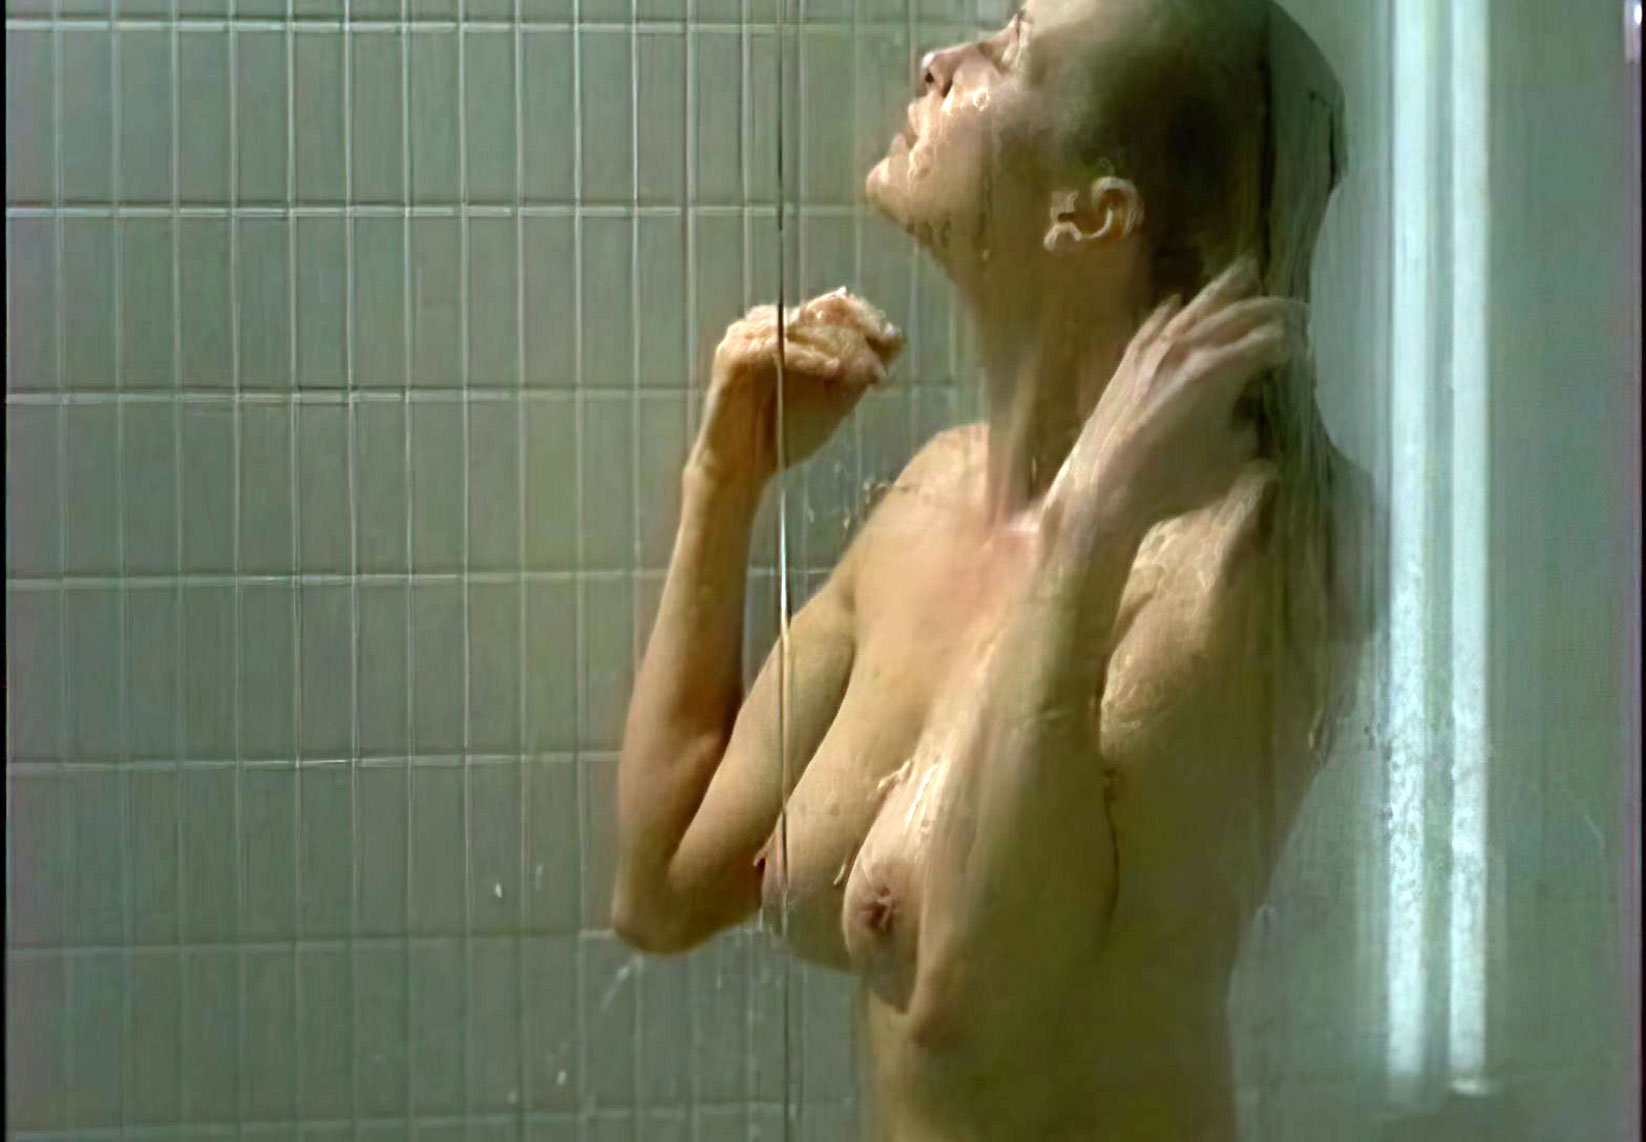 Estelle berglin nude pics